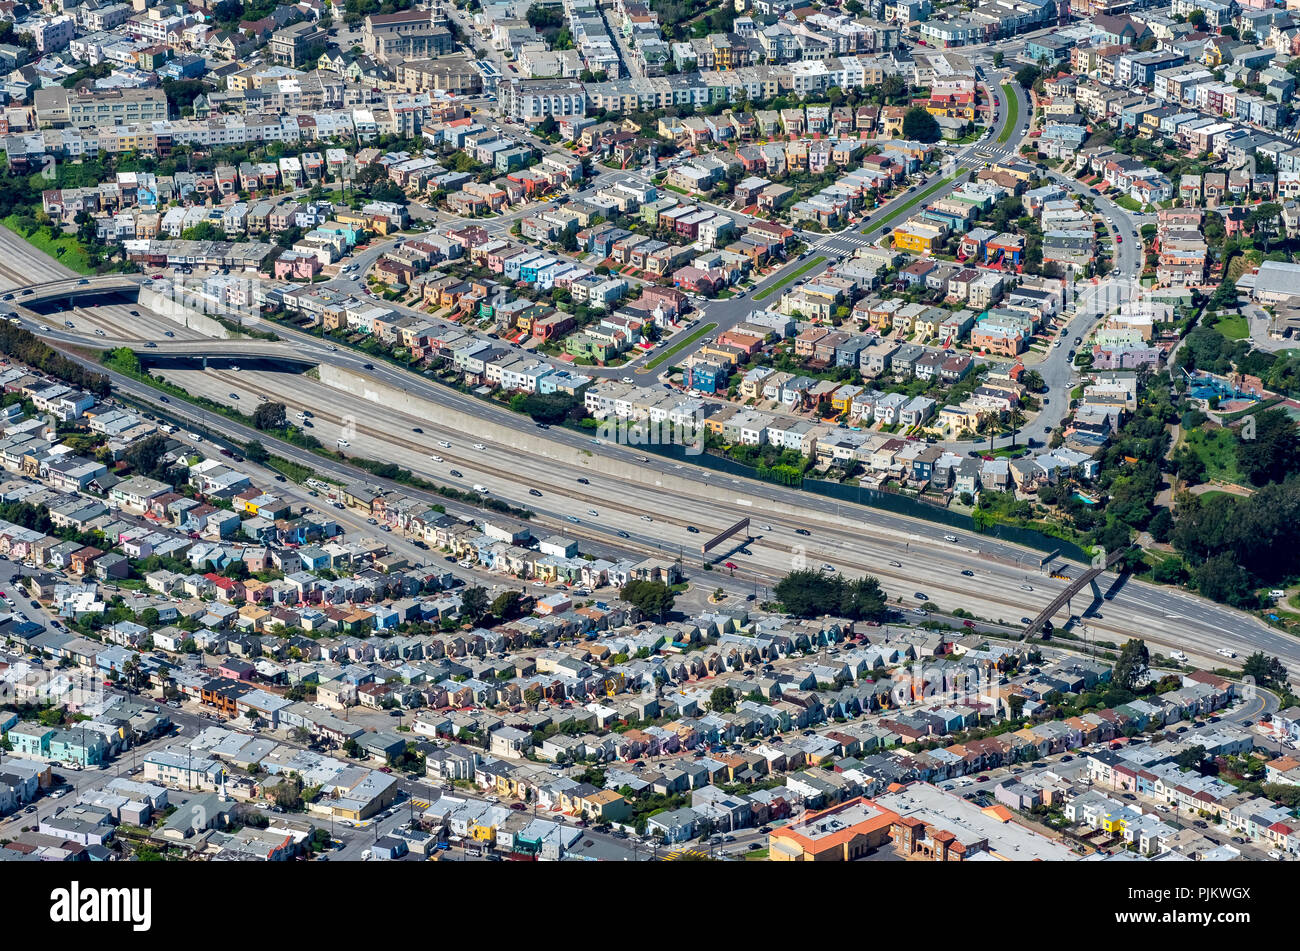 Offres et demandes de logement américain typique à l'autoroute, la pollution par le bruit, voisinage bruyant, South San Francisco, San Francisco, États-Unis d'Amérique, Californie, USA Banque D'Images